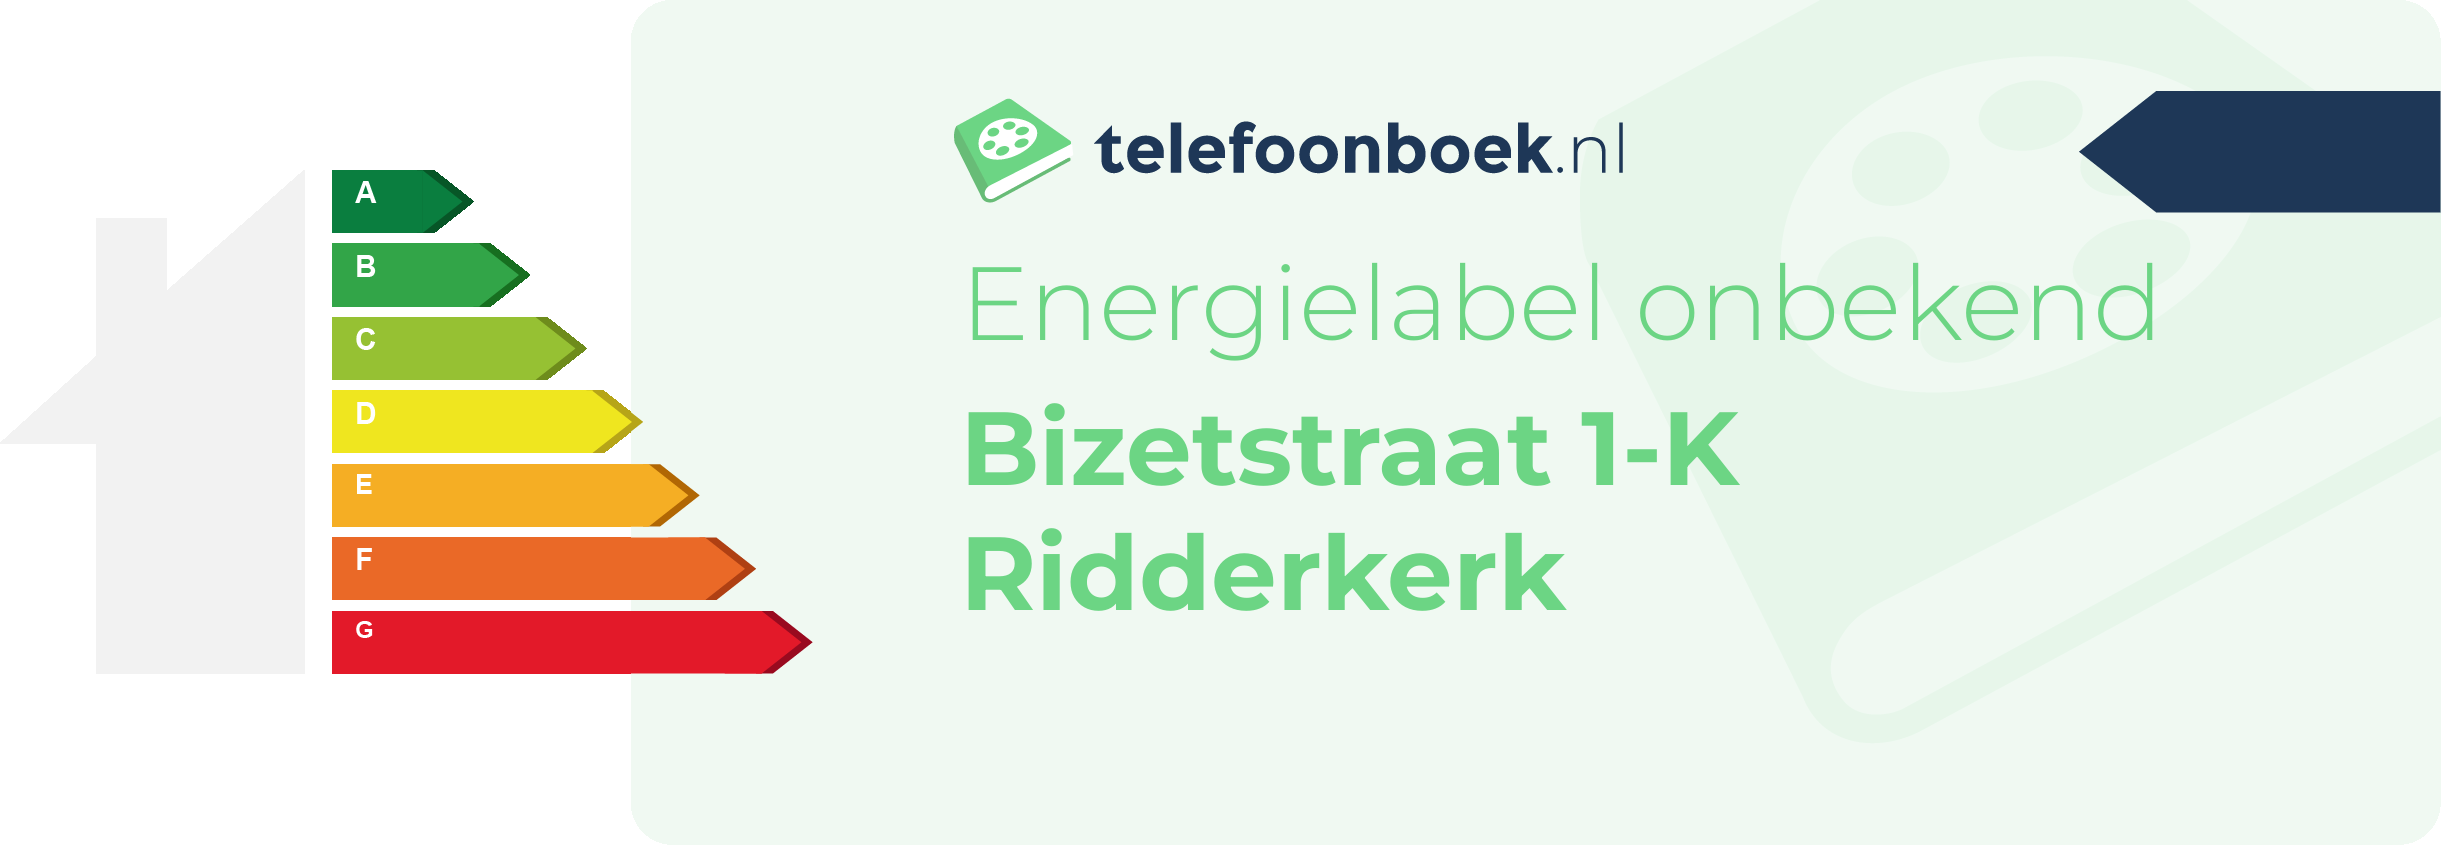 Energielabel Bizetstraat 1-K Ridderkerk